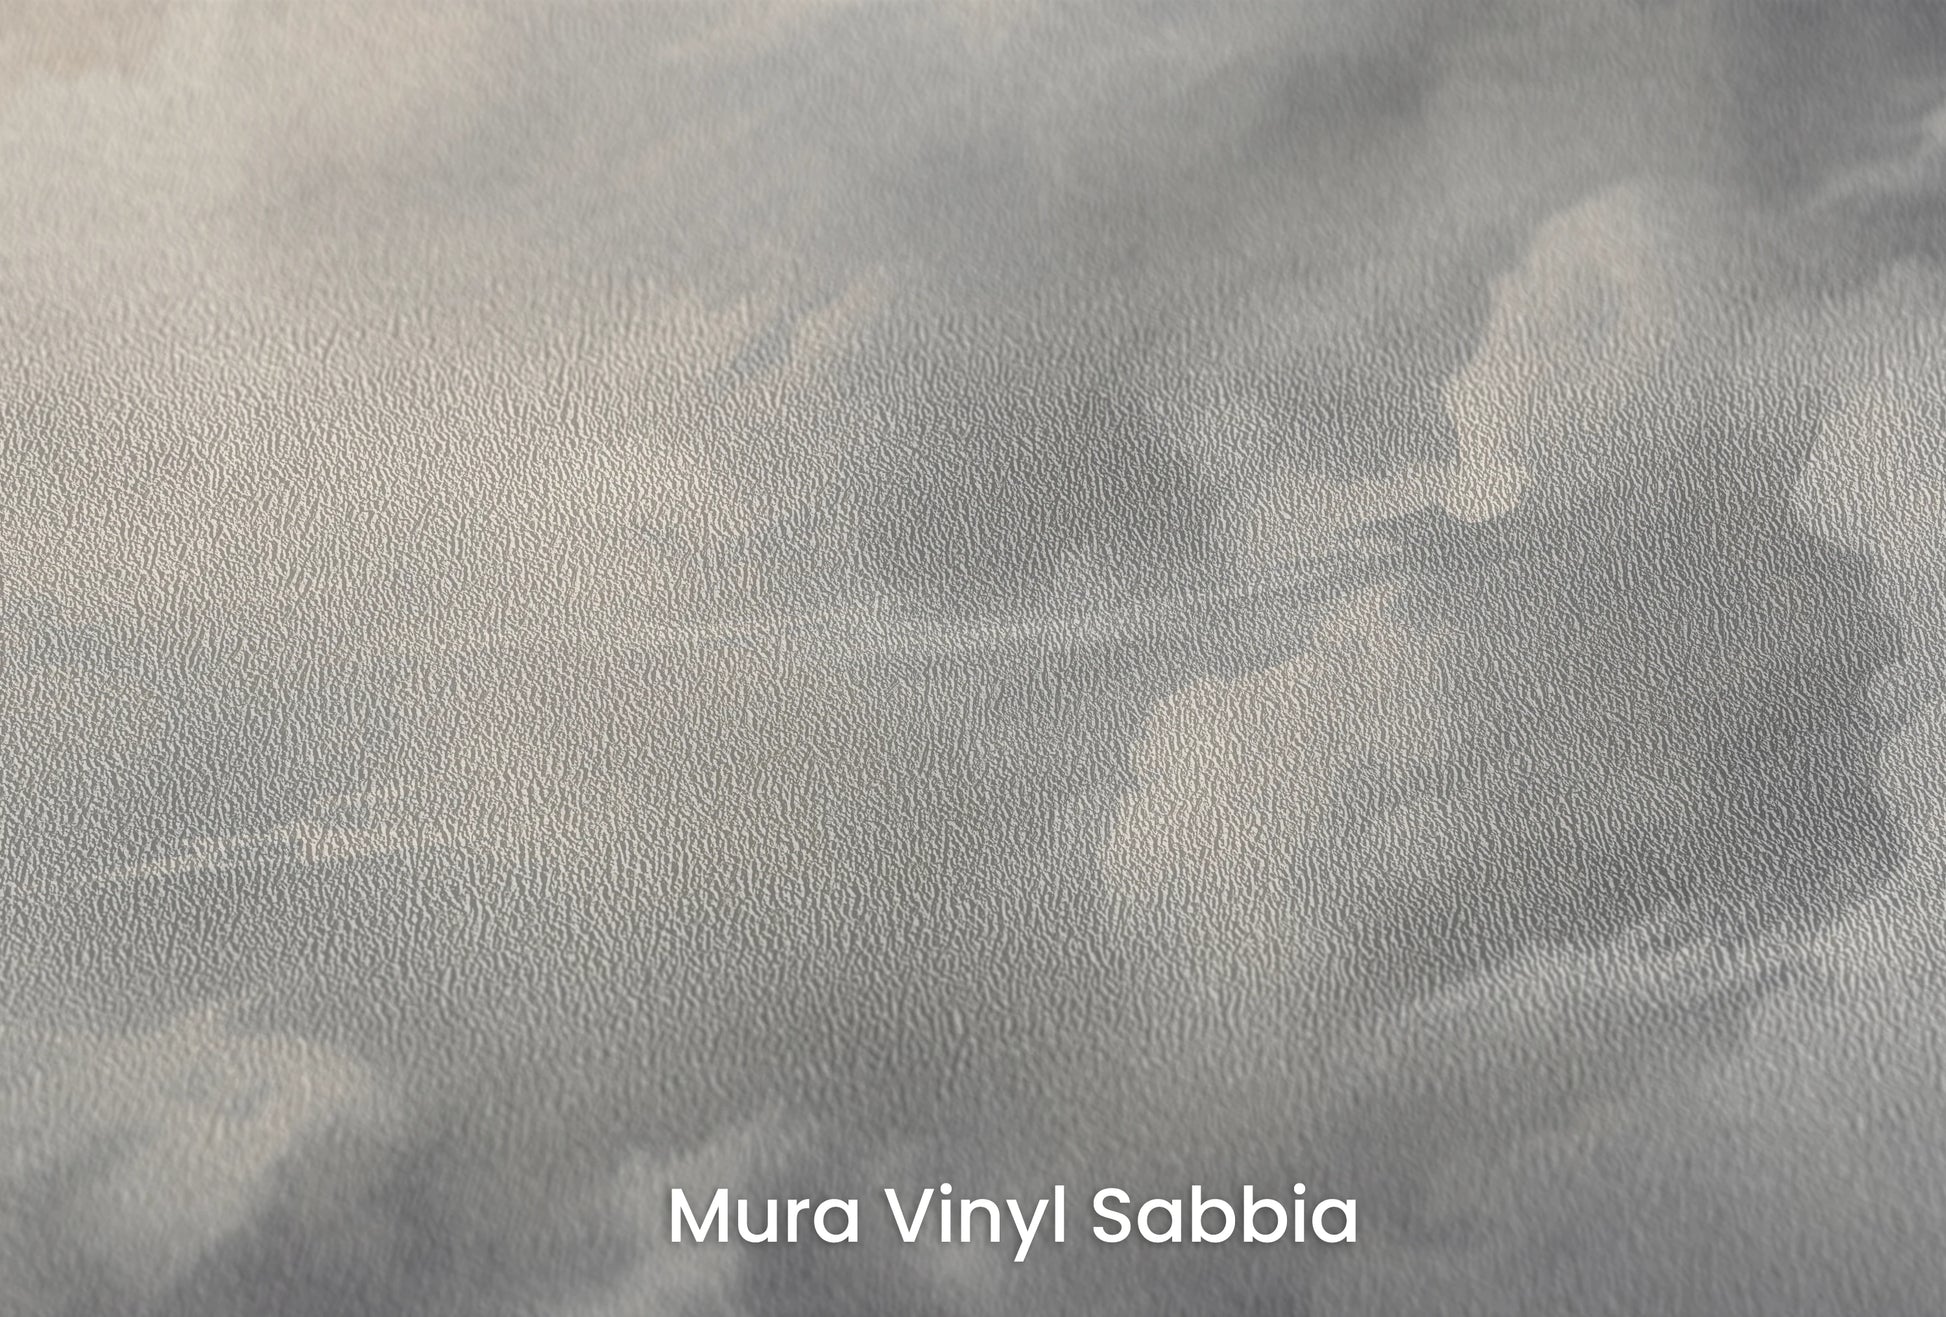 Zbliżenie na artystyczną fototapetę o nazwie Light Amidst Shadows na podłożu Mura Vinyl Sabbia struktura grubego ziarna piasku.